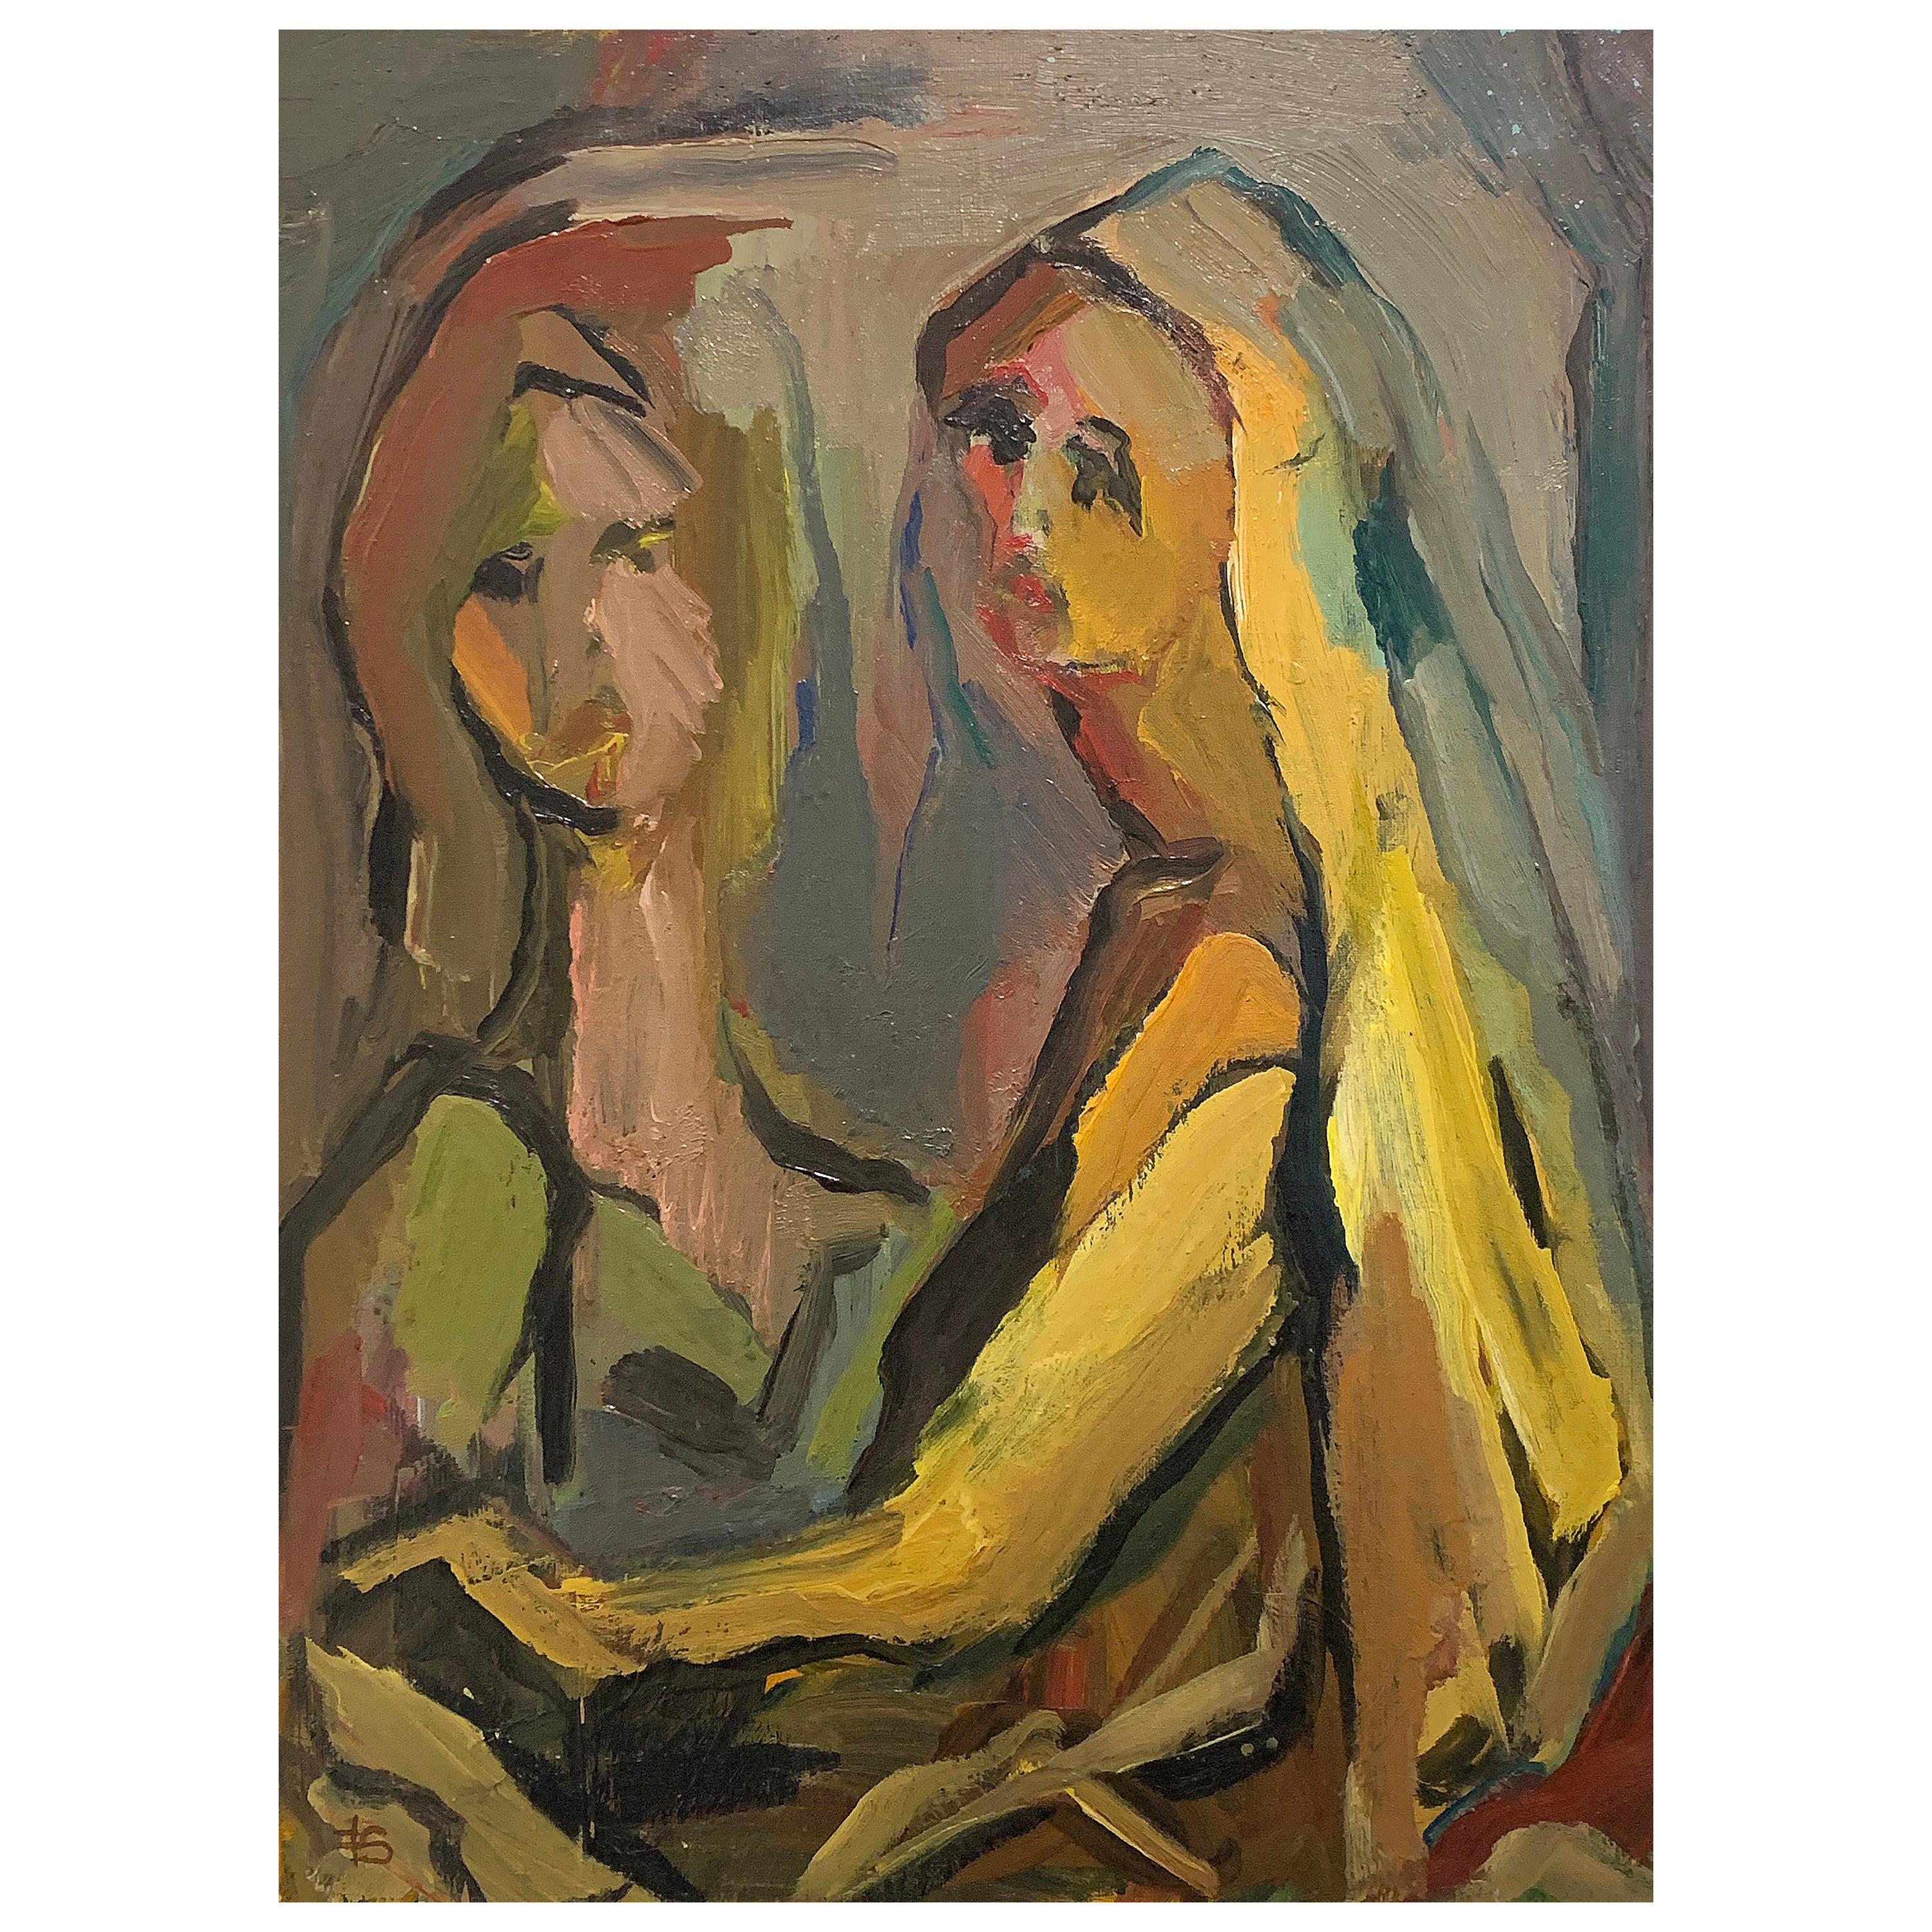 Sisters:: Gemälde der amerikanischen Malerin Fay Singer